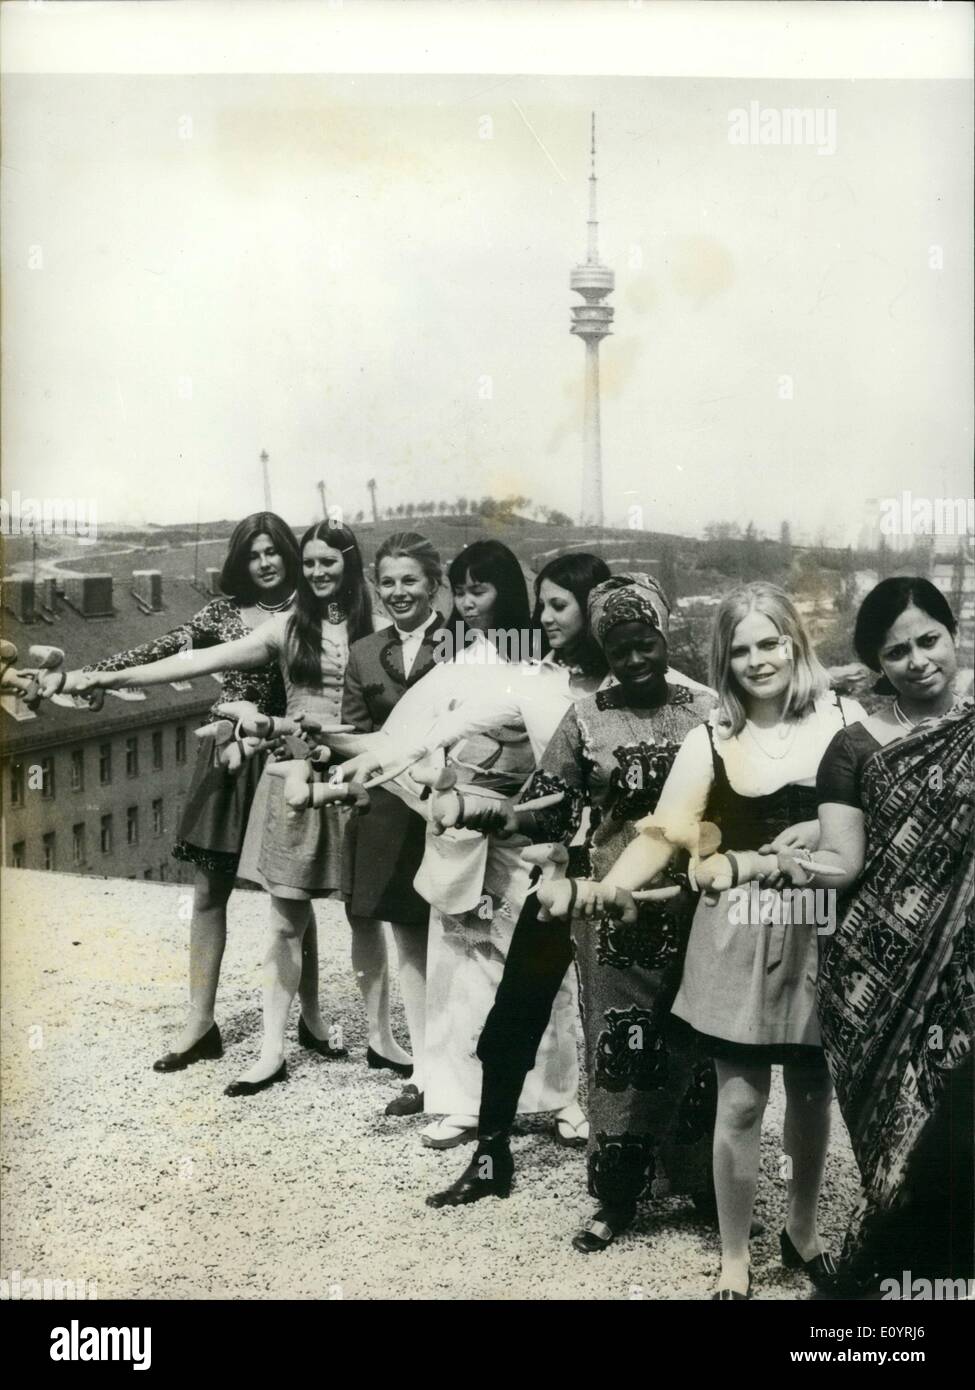 Avril 04, 1971 - Premières hôtesses pour les Jeux Olympiques de Munich. 1 500 hôtesses sont requises par l'organisation des Jeux Olympiques de 1972 à Munich (Allemagne). À partir de 6 000 demandes qui ont été envoyées de toutes les parties du monde, plus de 1 000 filles ont déjà été choisis. 8 d'entre eux ont déjà été introduites en tant que première hôtesses pour l'Olympiade. Photo montre :- (L à R) : Ingeborg Gruner (Allemagne) ; Renate Schutz (Allemagne) ; Helga Hasshoff (Allemagne) ; Atsuku Diemann (Japon) ; Neysa Erickssen-Pereira (Brésil) ; Joyce Darko (Ghana) ; Rabbethge Hella (allemand) et Ravibala Shenoy (Inde) Banque D'Images